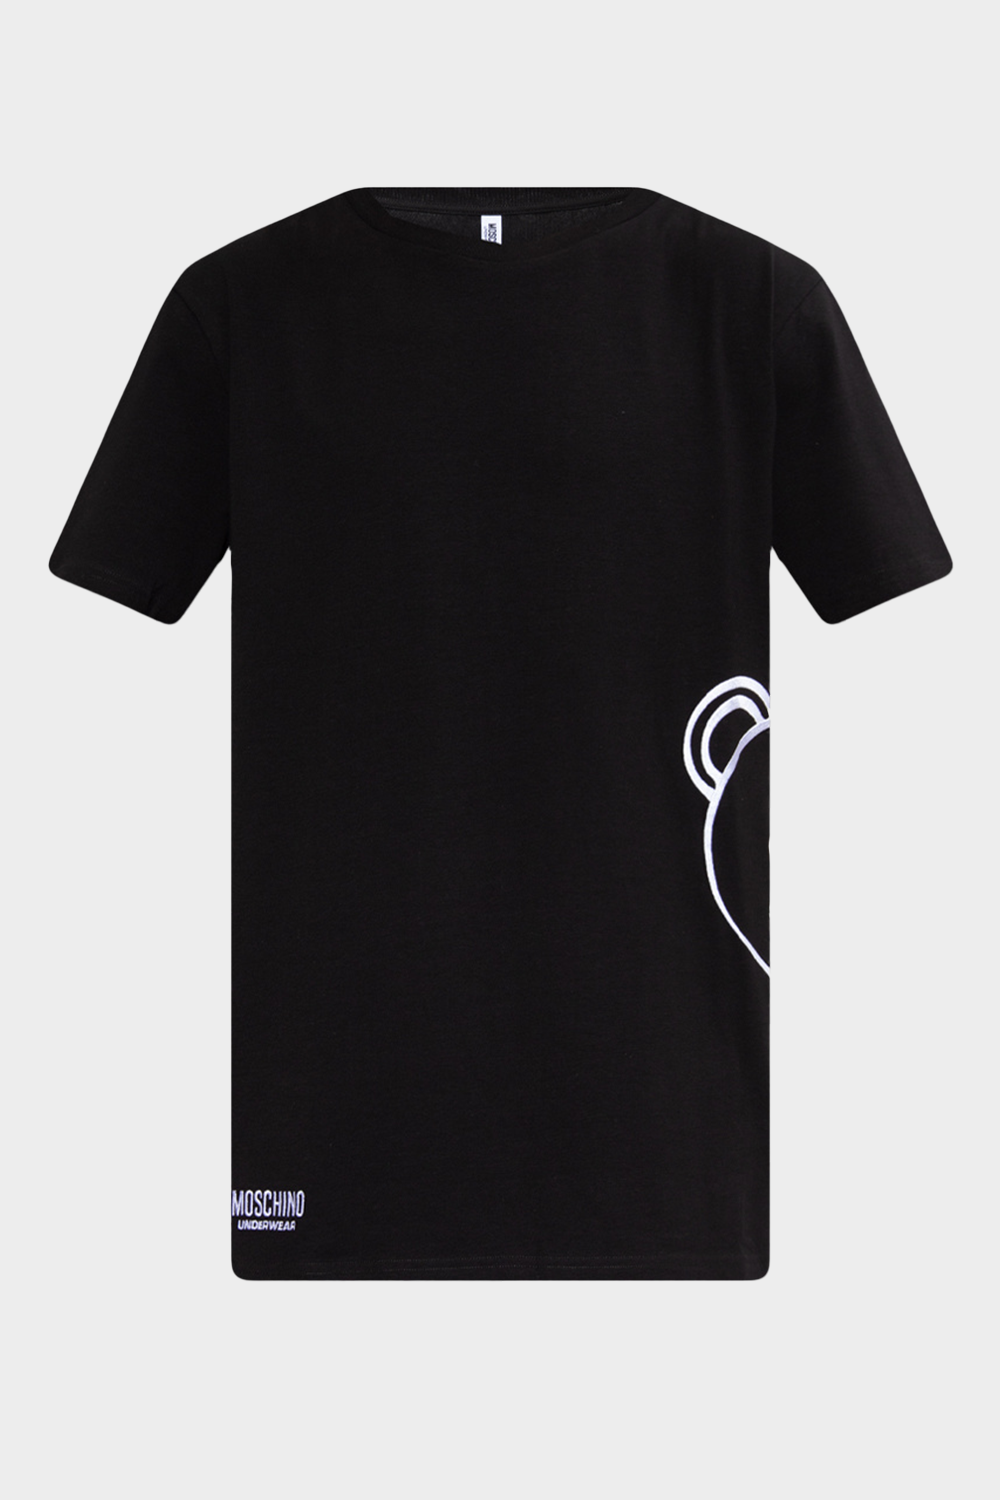 חולצת טי שירט לגברים בצבע שחור MOSCHINO Vendome online | ונדום .